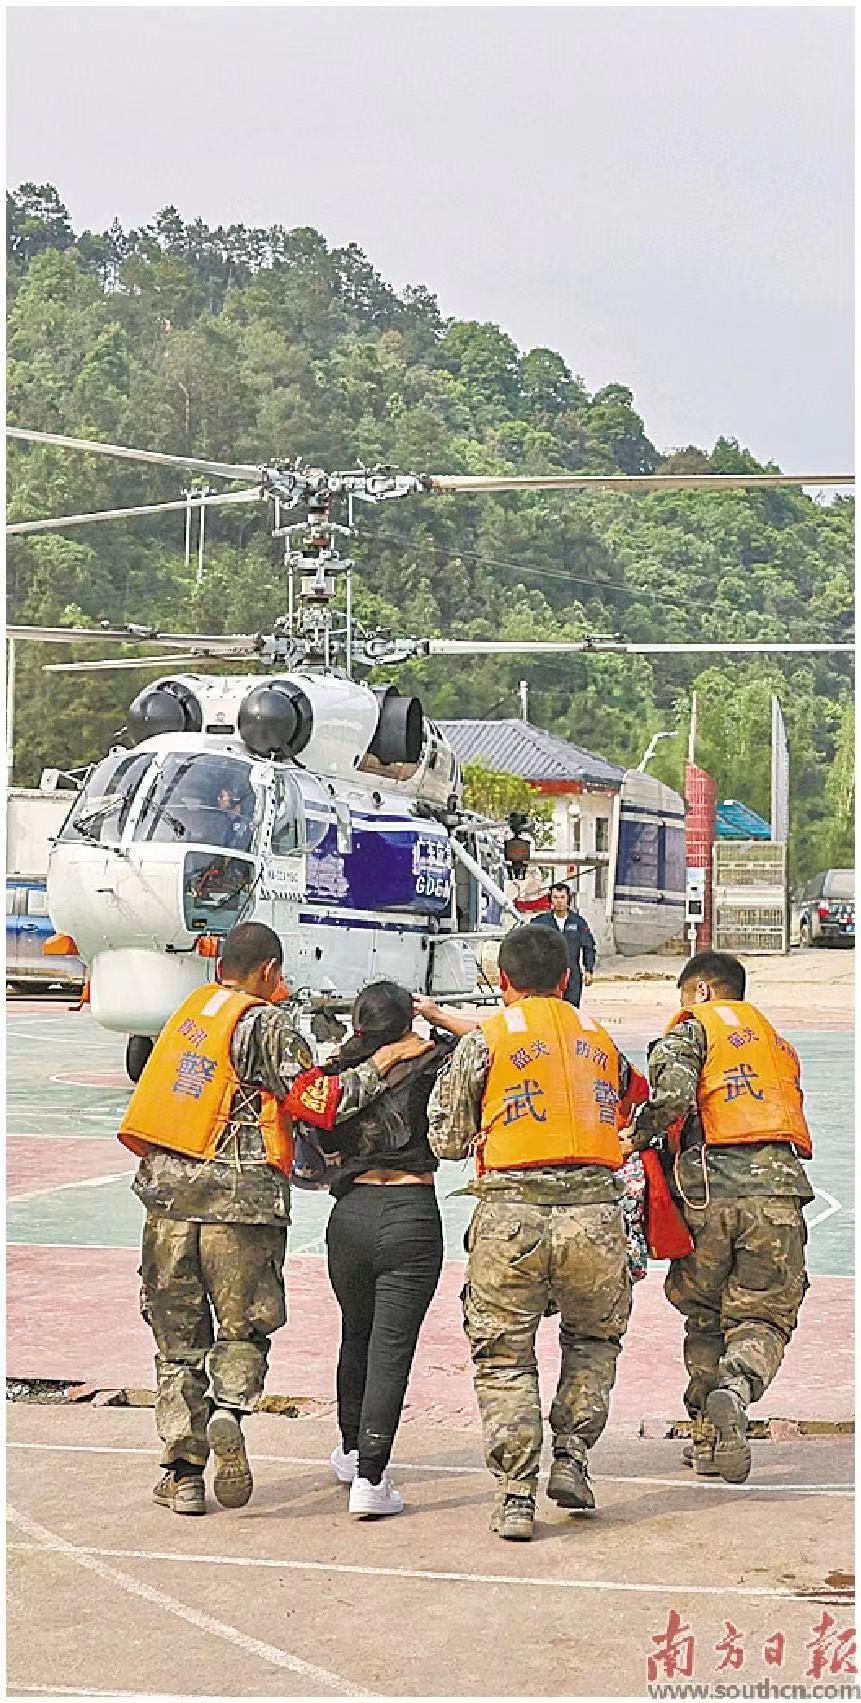 救援人员带领灾区群众乘坐直升机转移。    南方日报记者 郑新洽 董天健 摄